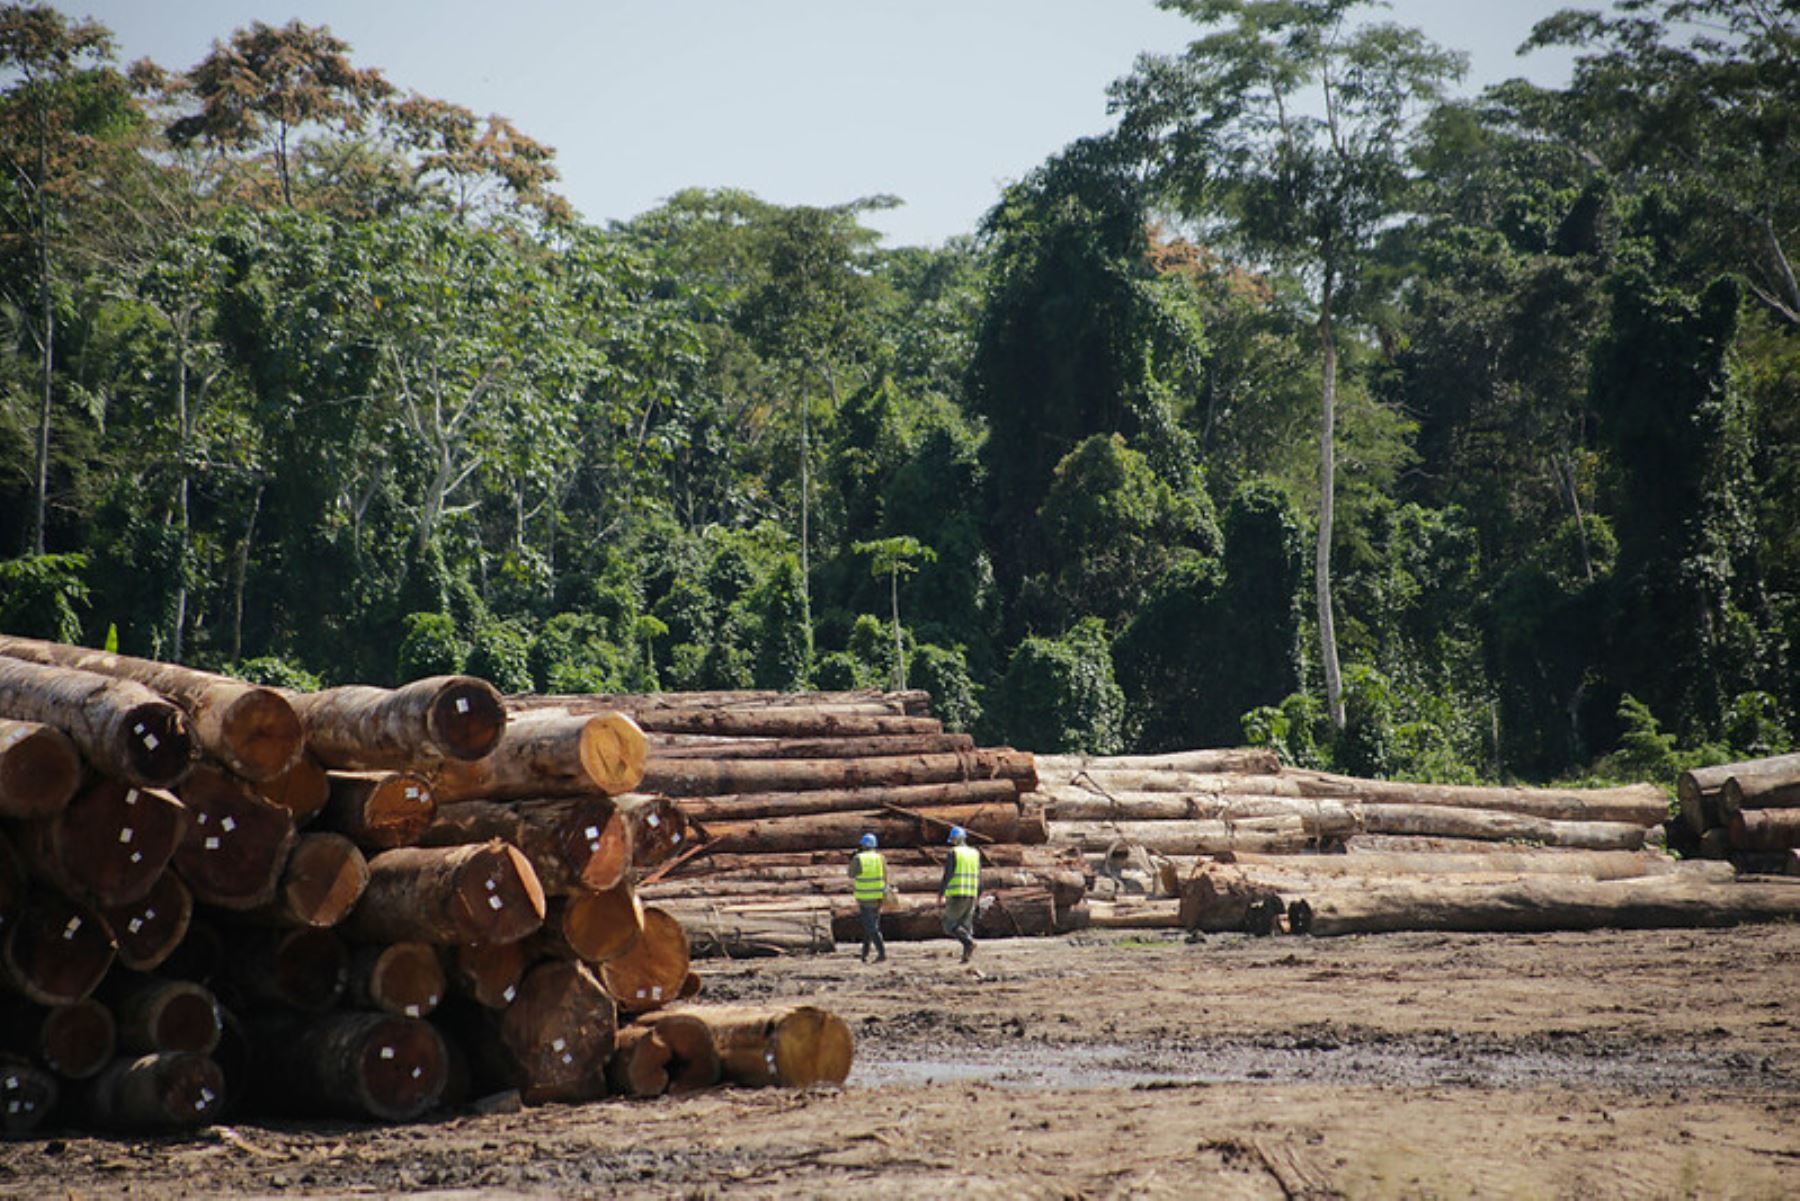 Las herramientas permiten tener información de la trazabilidad de la madera, desde su origen, rastrear la ubicación y la trayectoria de los productos forestales y derivados de los mismos, a lo largo de la cadena de producción, a fin de poder corroborar el origen legal y promover la competitividad,